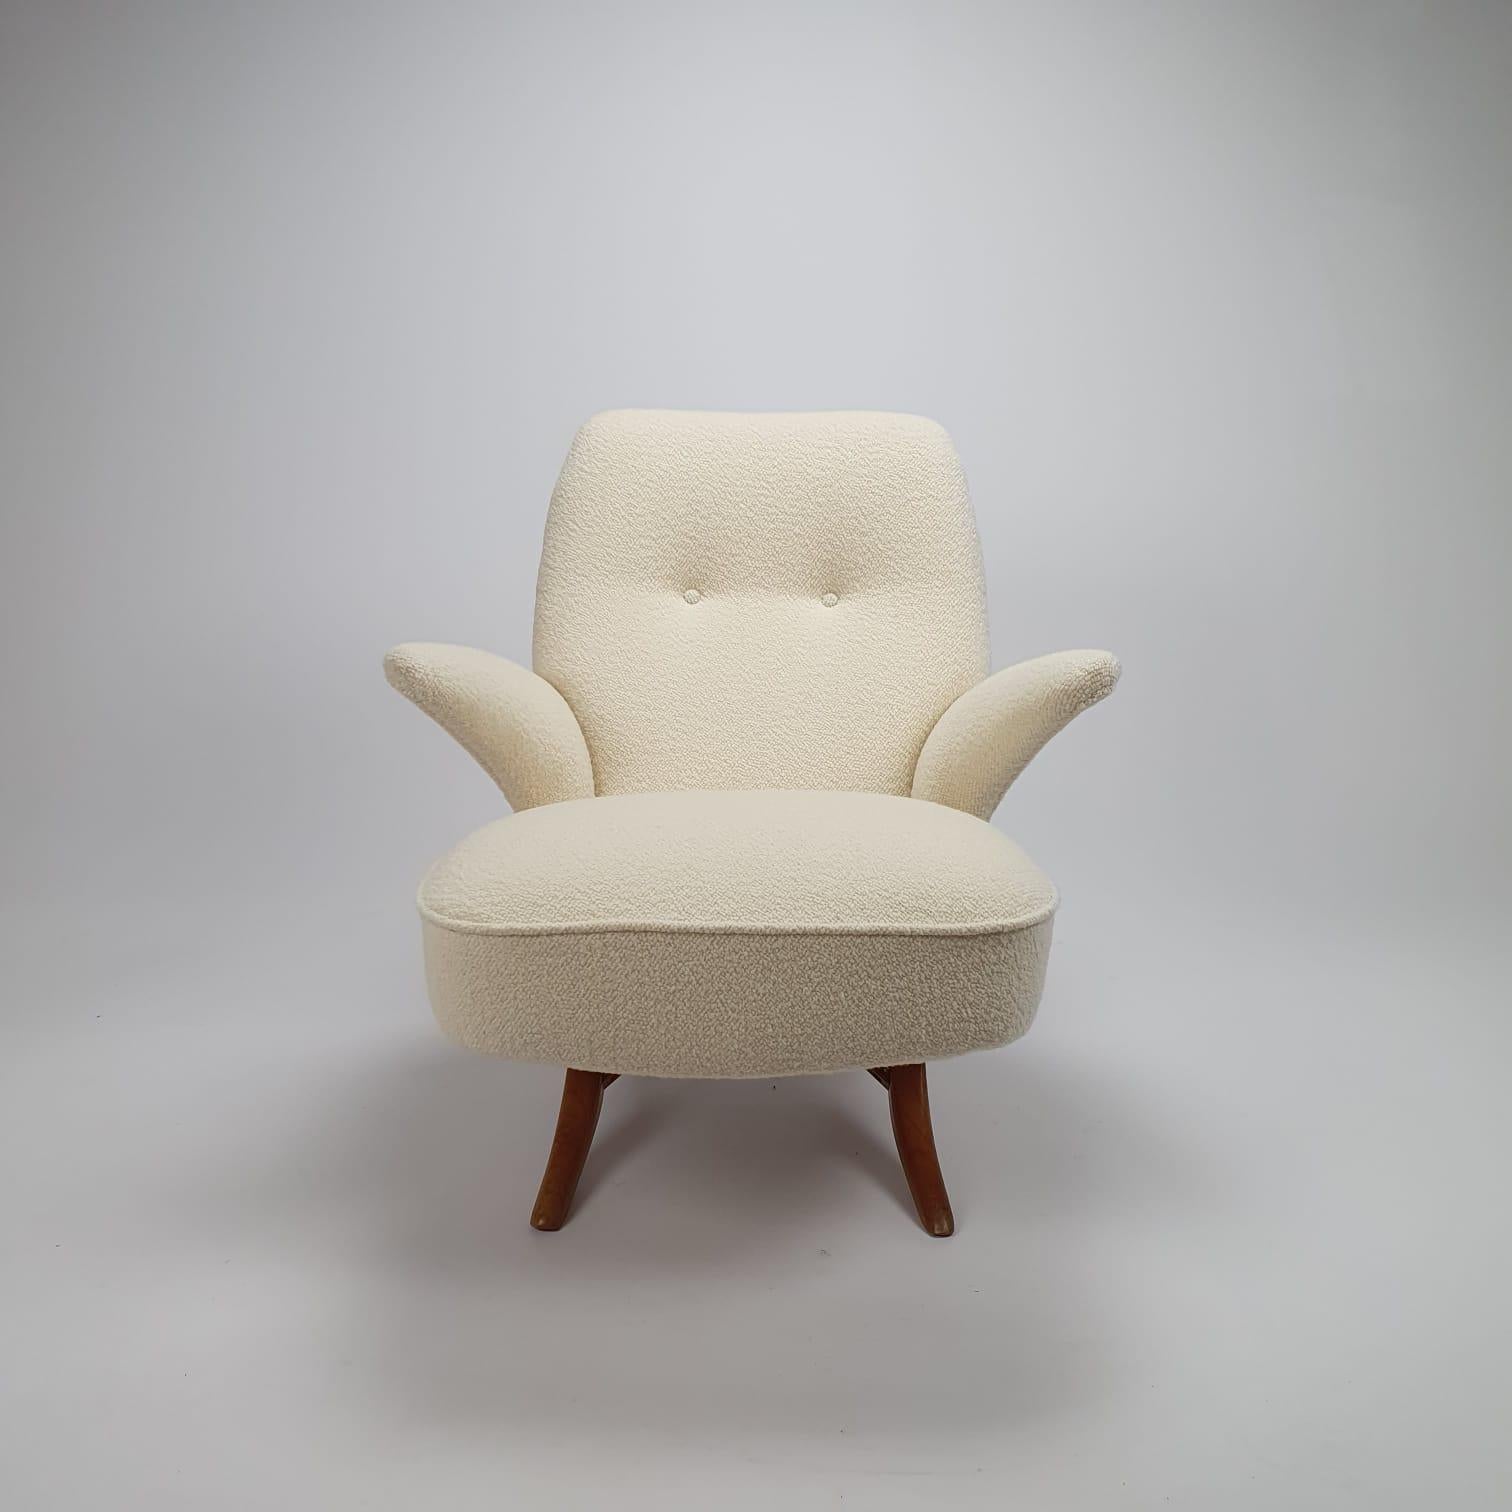 Atemberaubender Mid-Century Modern Pinguin-Stuhl, entworfen von Theo Ruth für Artifort.
Ikonisches niederländisches Design aus den 50er Jahren.
Die Rückenlehne und die Sitzfläche sind 2 separate Teile, die sich leicht zusammenfügen lassen und den